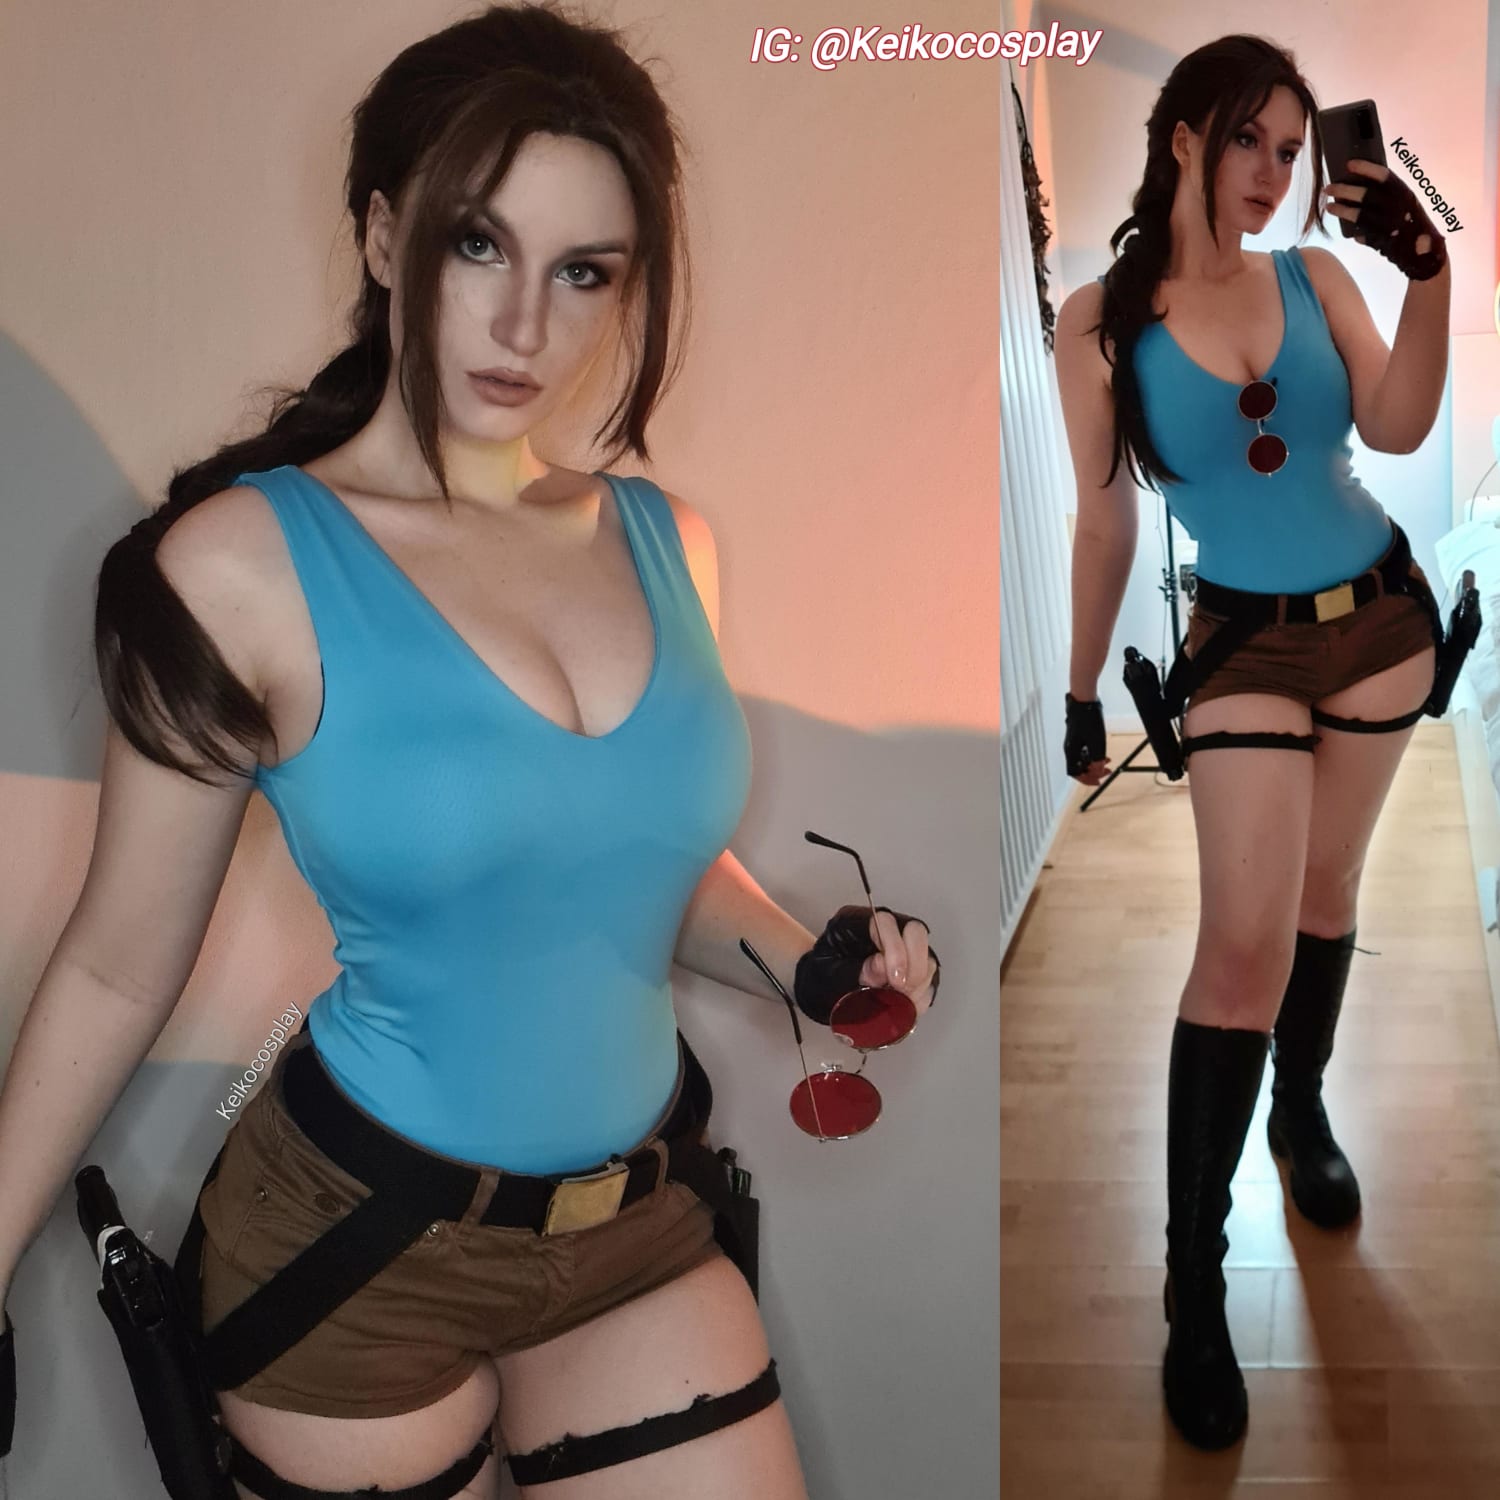 Lara croft cosplay by Keikocosplay [self]